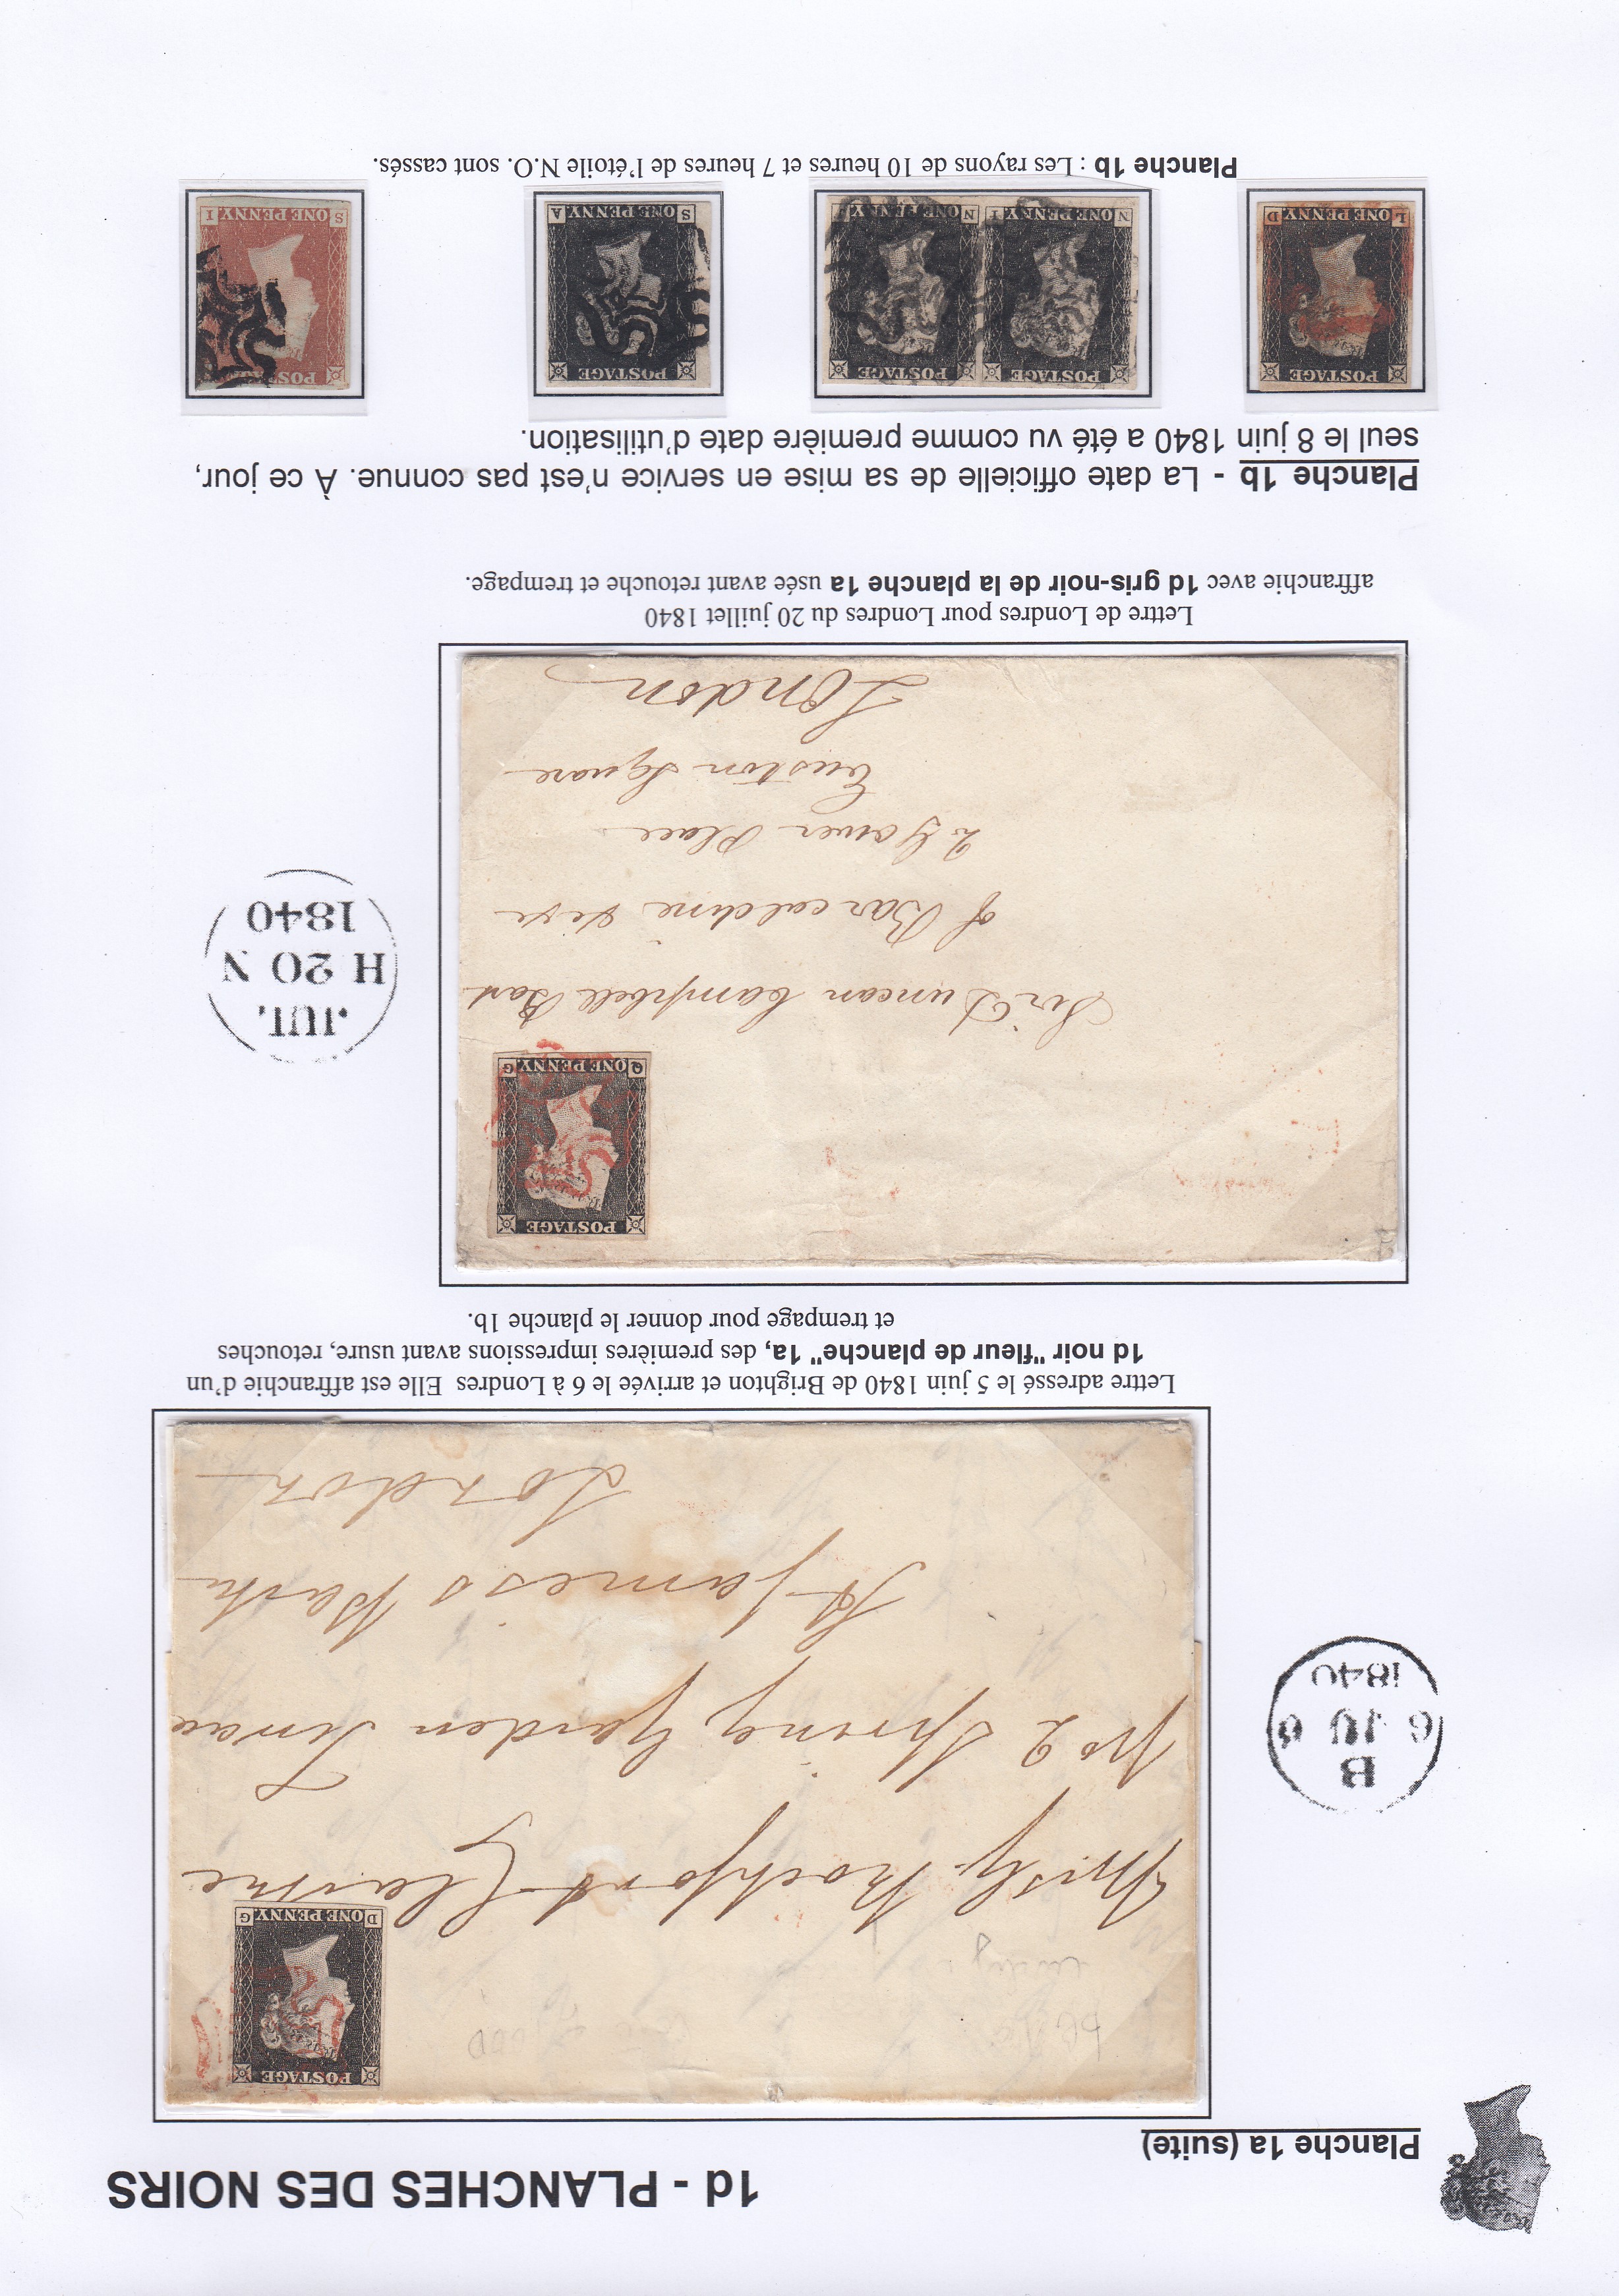 Timbres de Grande Bretagne en taille douce 1840-1879. Etude chronologique du planchage de leurs ��missions p. 3